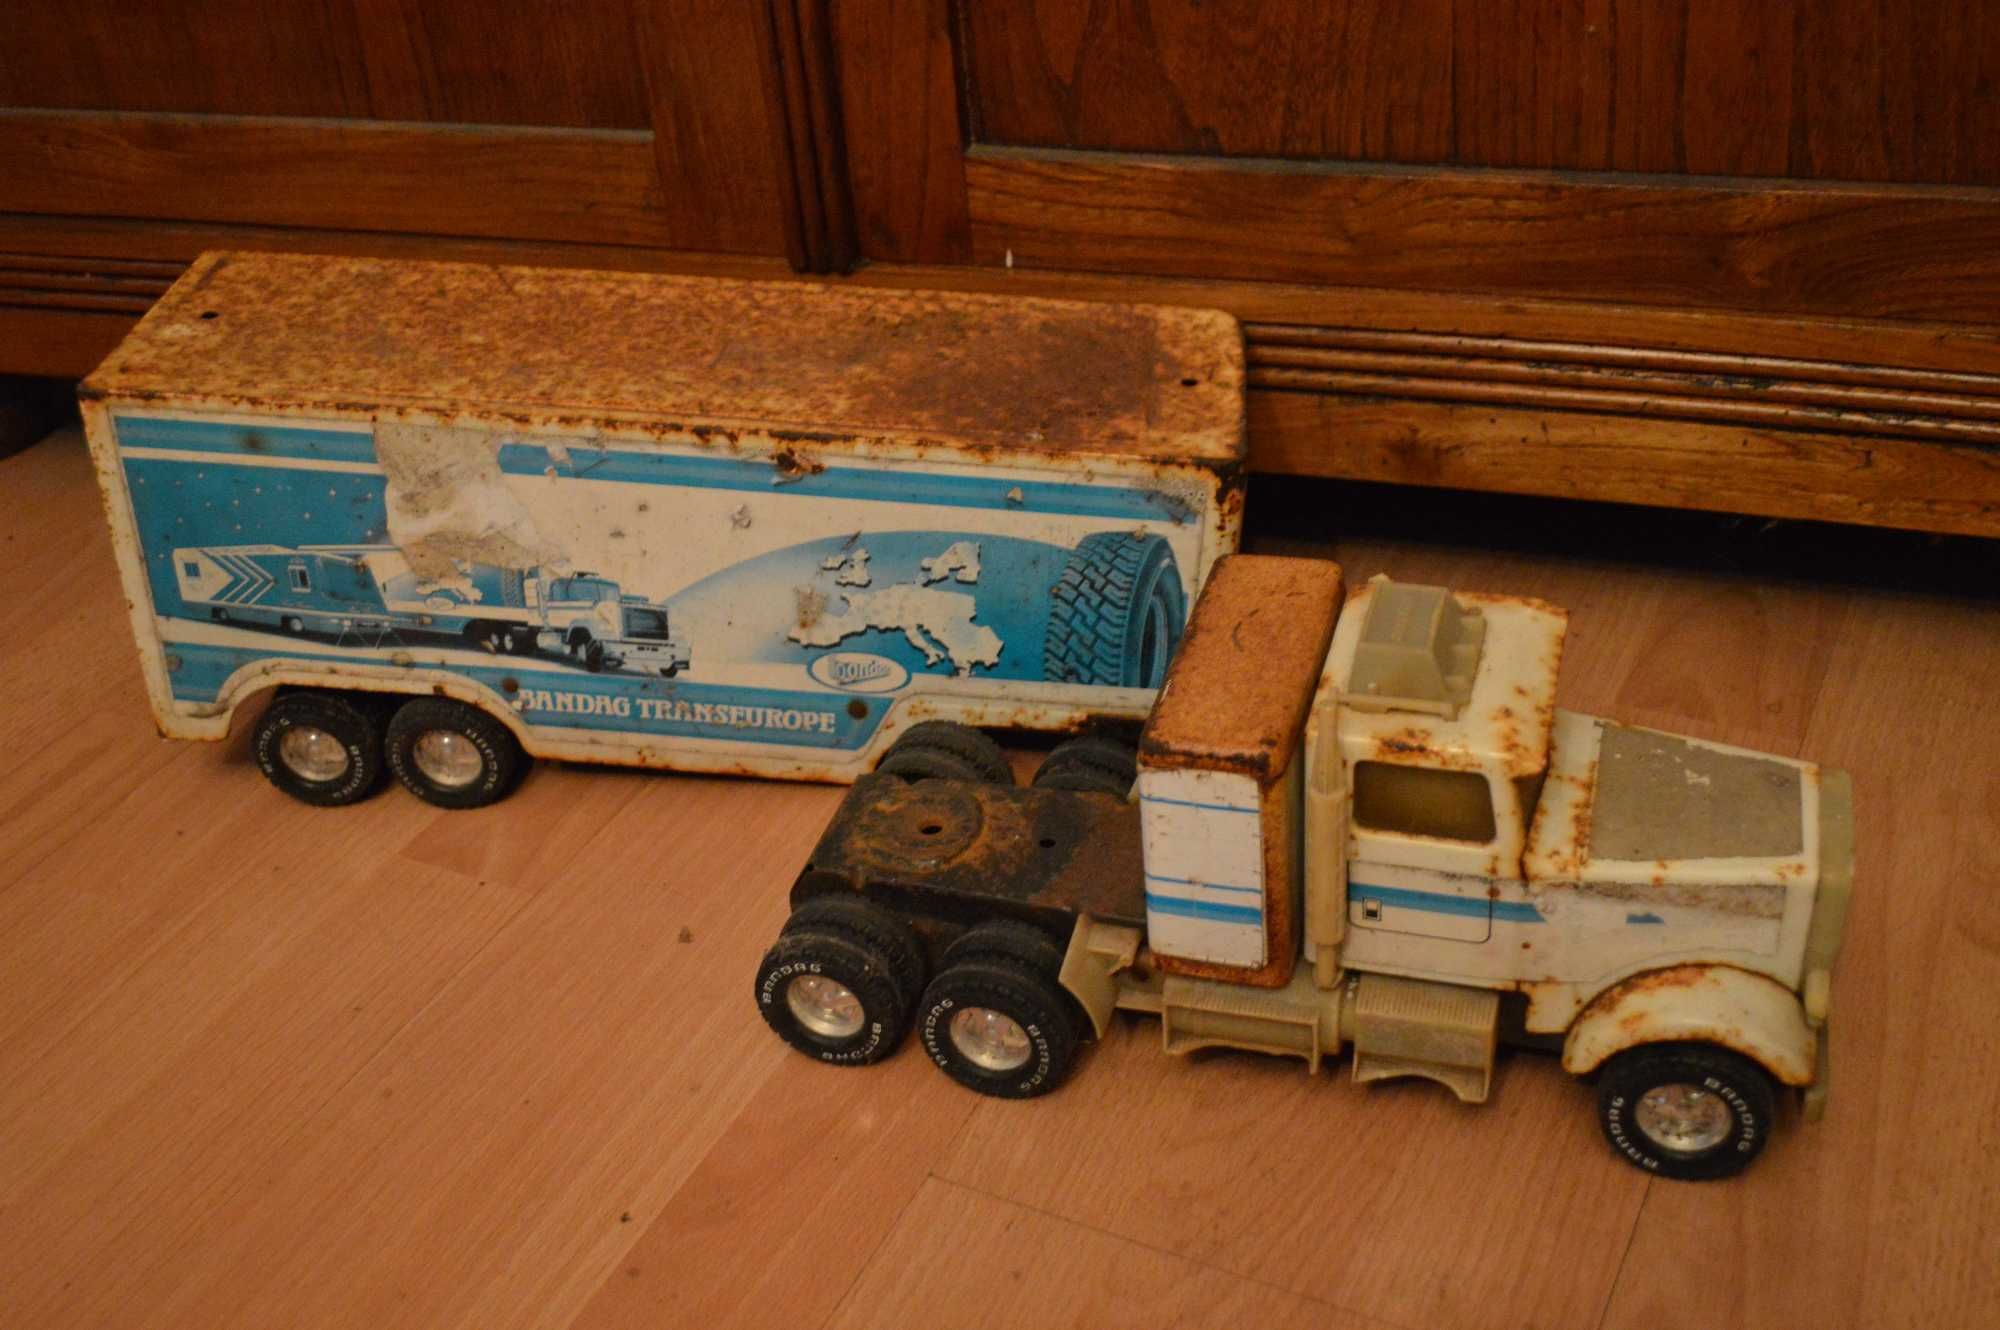 blaszana zabawka samochod metalowy stara zabawka duza ciężarówka dlug